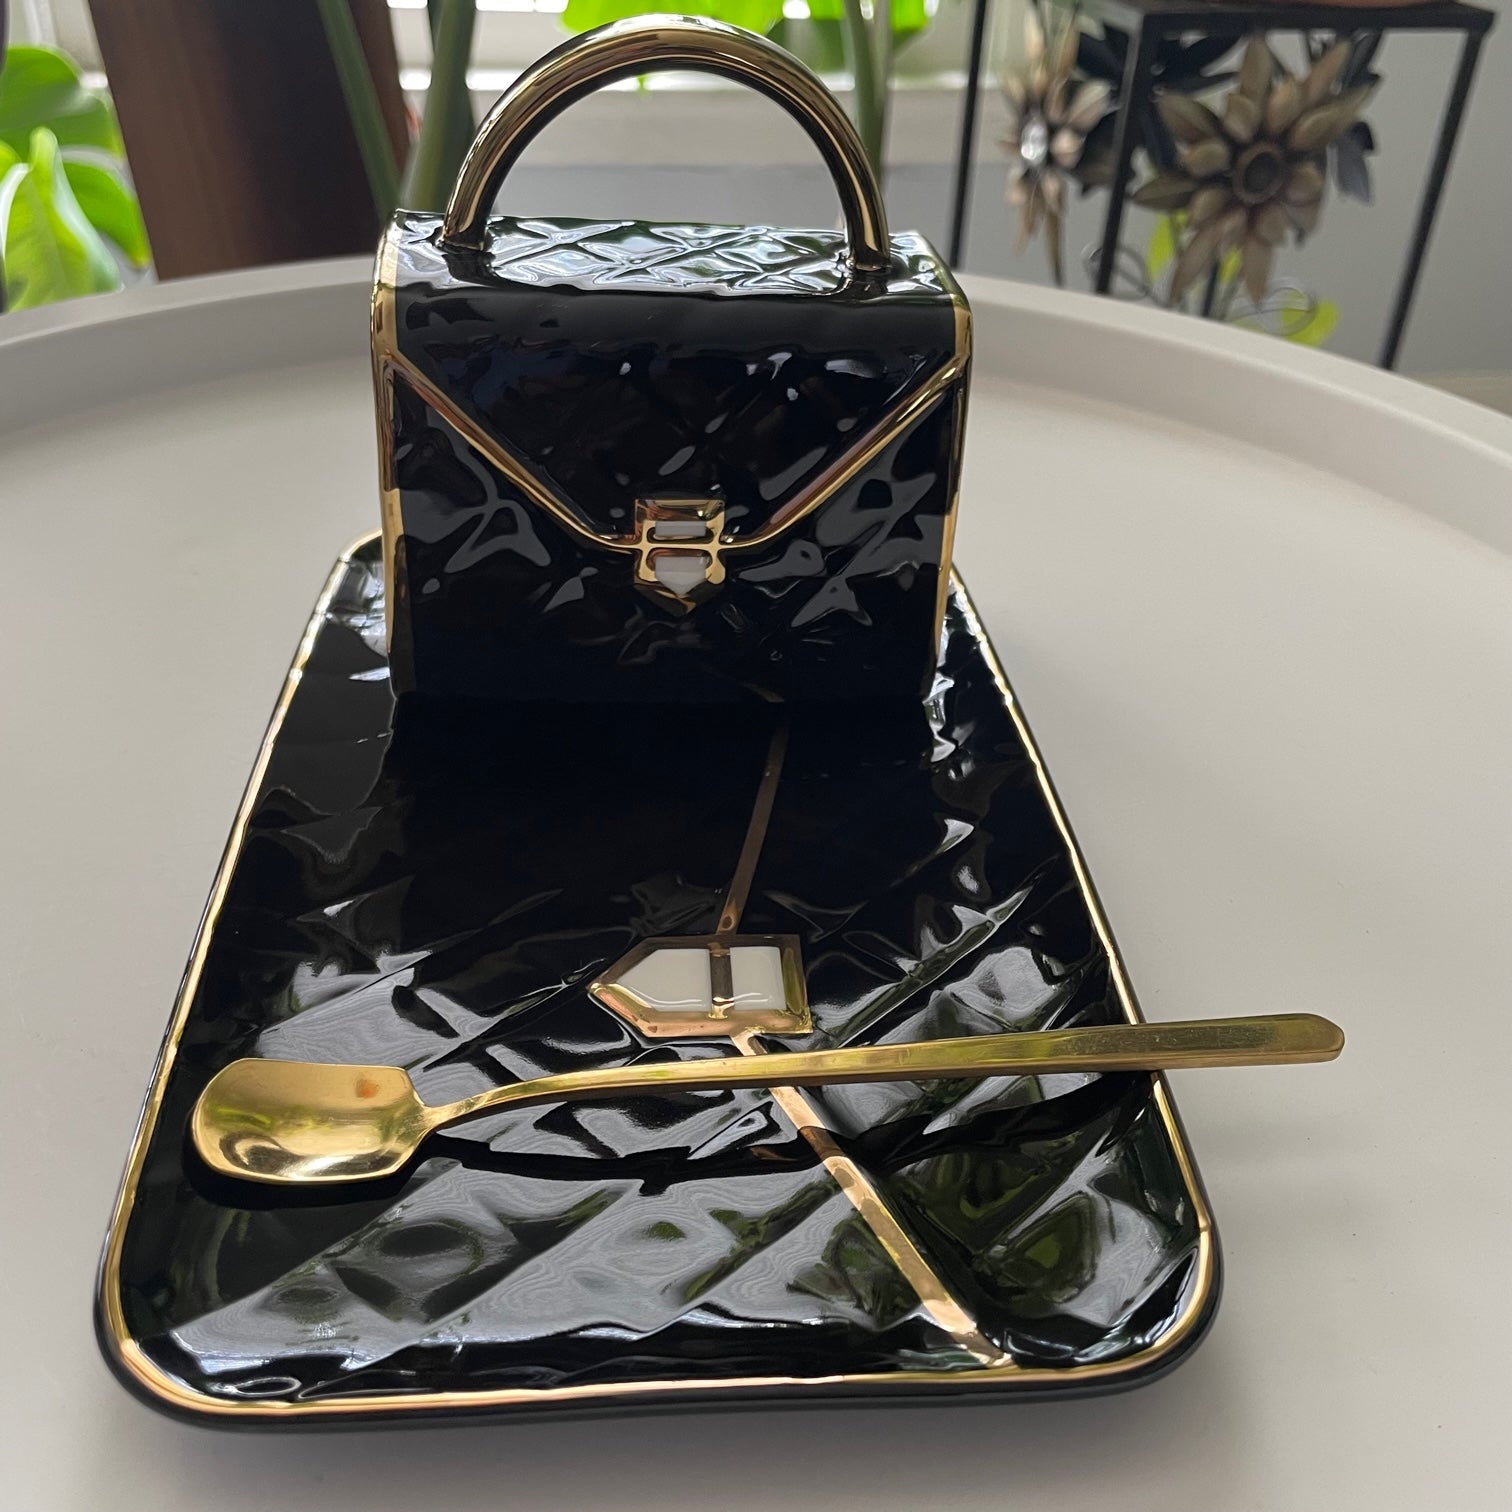 Black handbag tea set – The Purple Mushroom